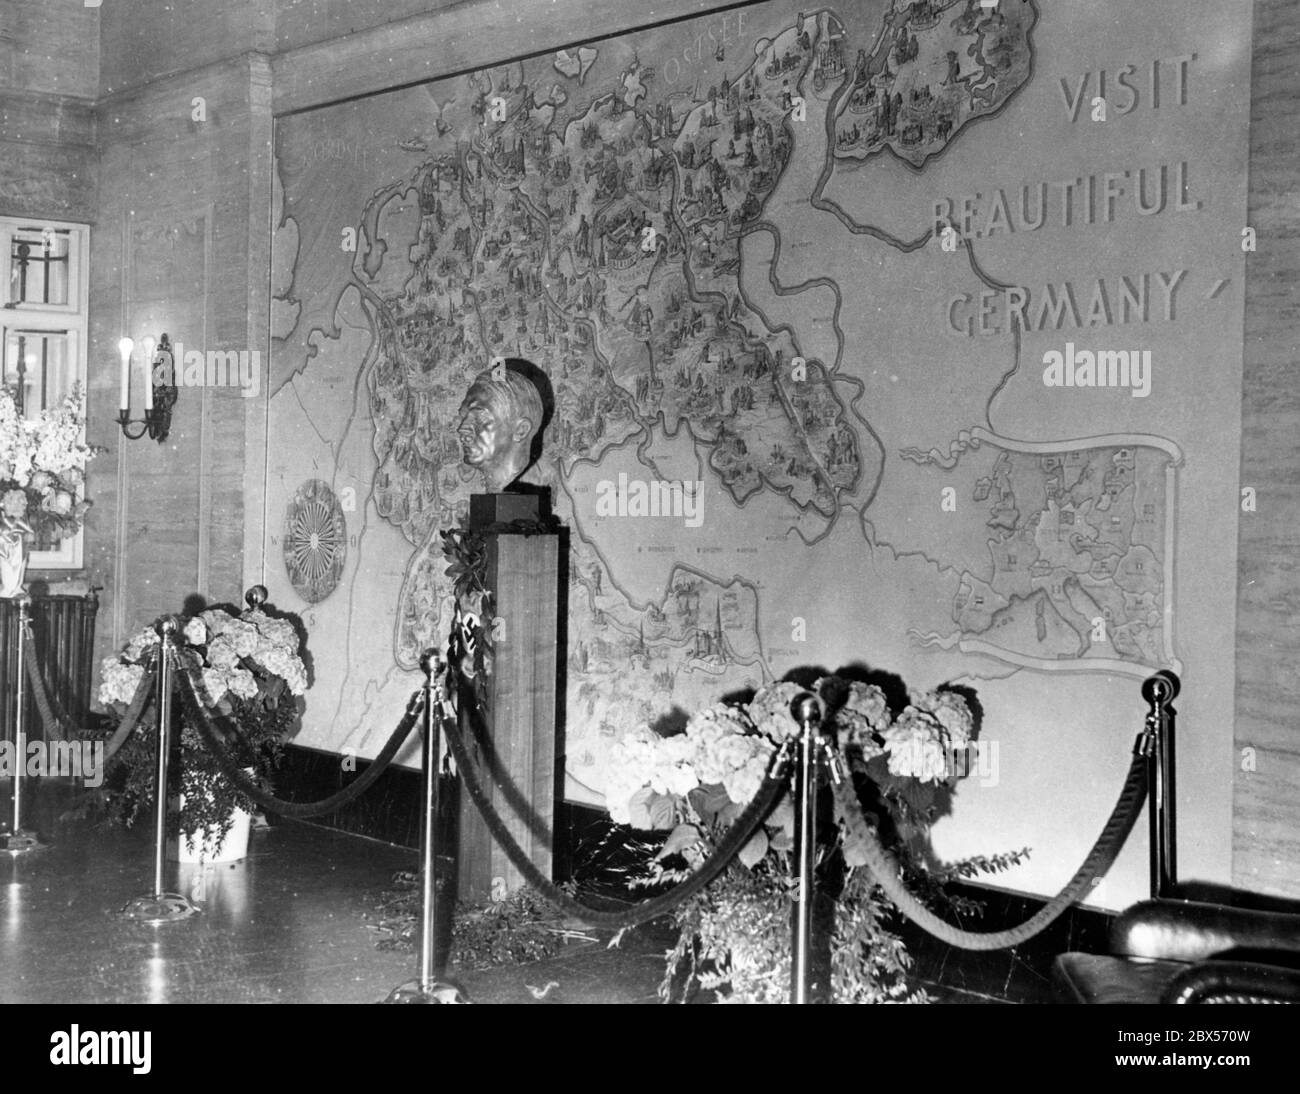 Un'agenzia di viaggi del Reich tedesco è aperta a New York con una cerimonia festiva. Qui nella stanza del Deutsche Reichsbahn è una grande mappa del Reich (tra una bussola rosa a sinistra e una piccola mappa d'Europa a destra) e un busto di Adolf Hitler. Sulla mappa c'è l'invito 'Visita la bellissima Germania'. Foto Stock